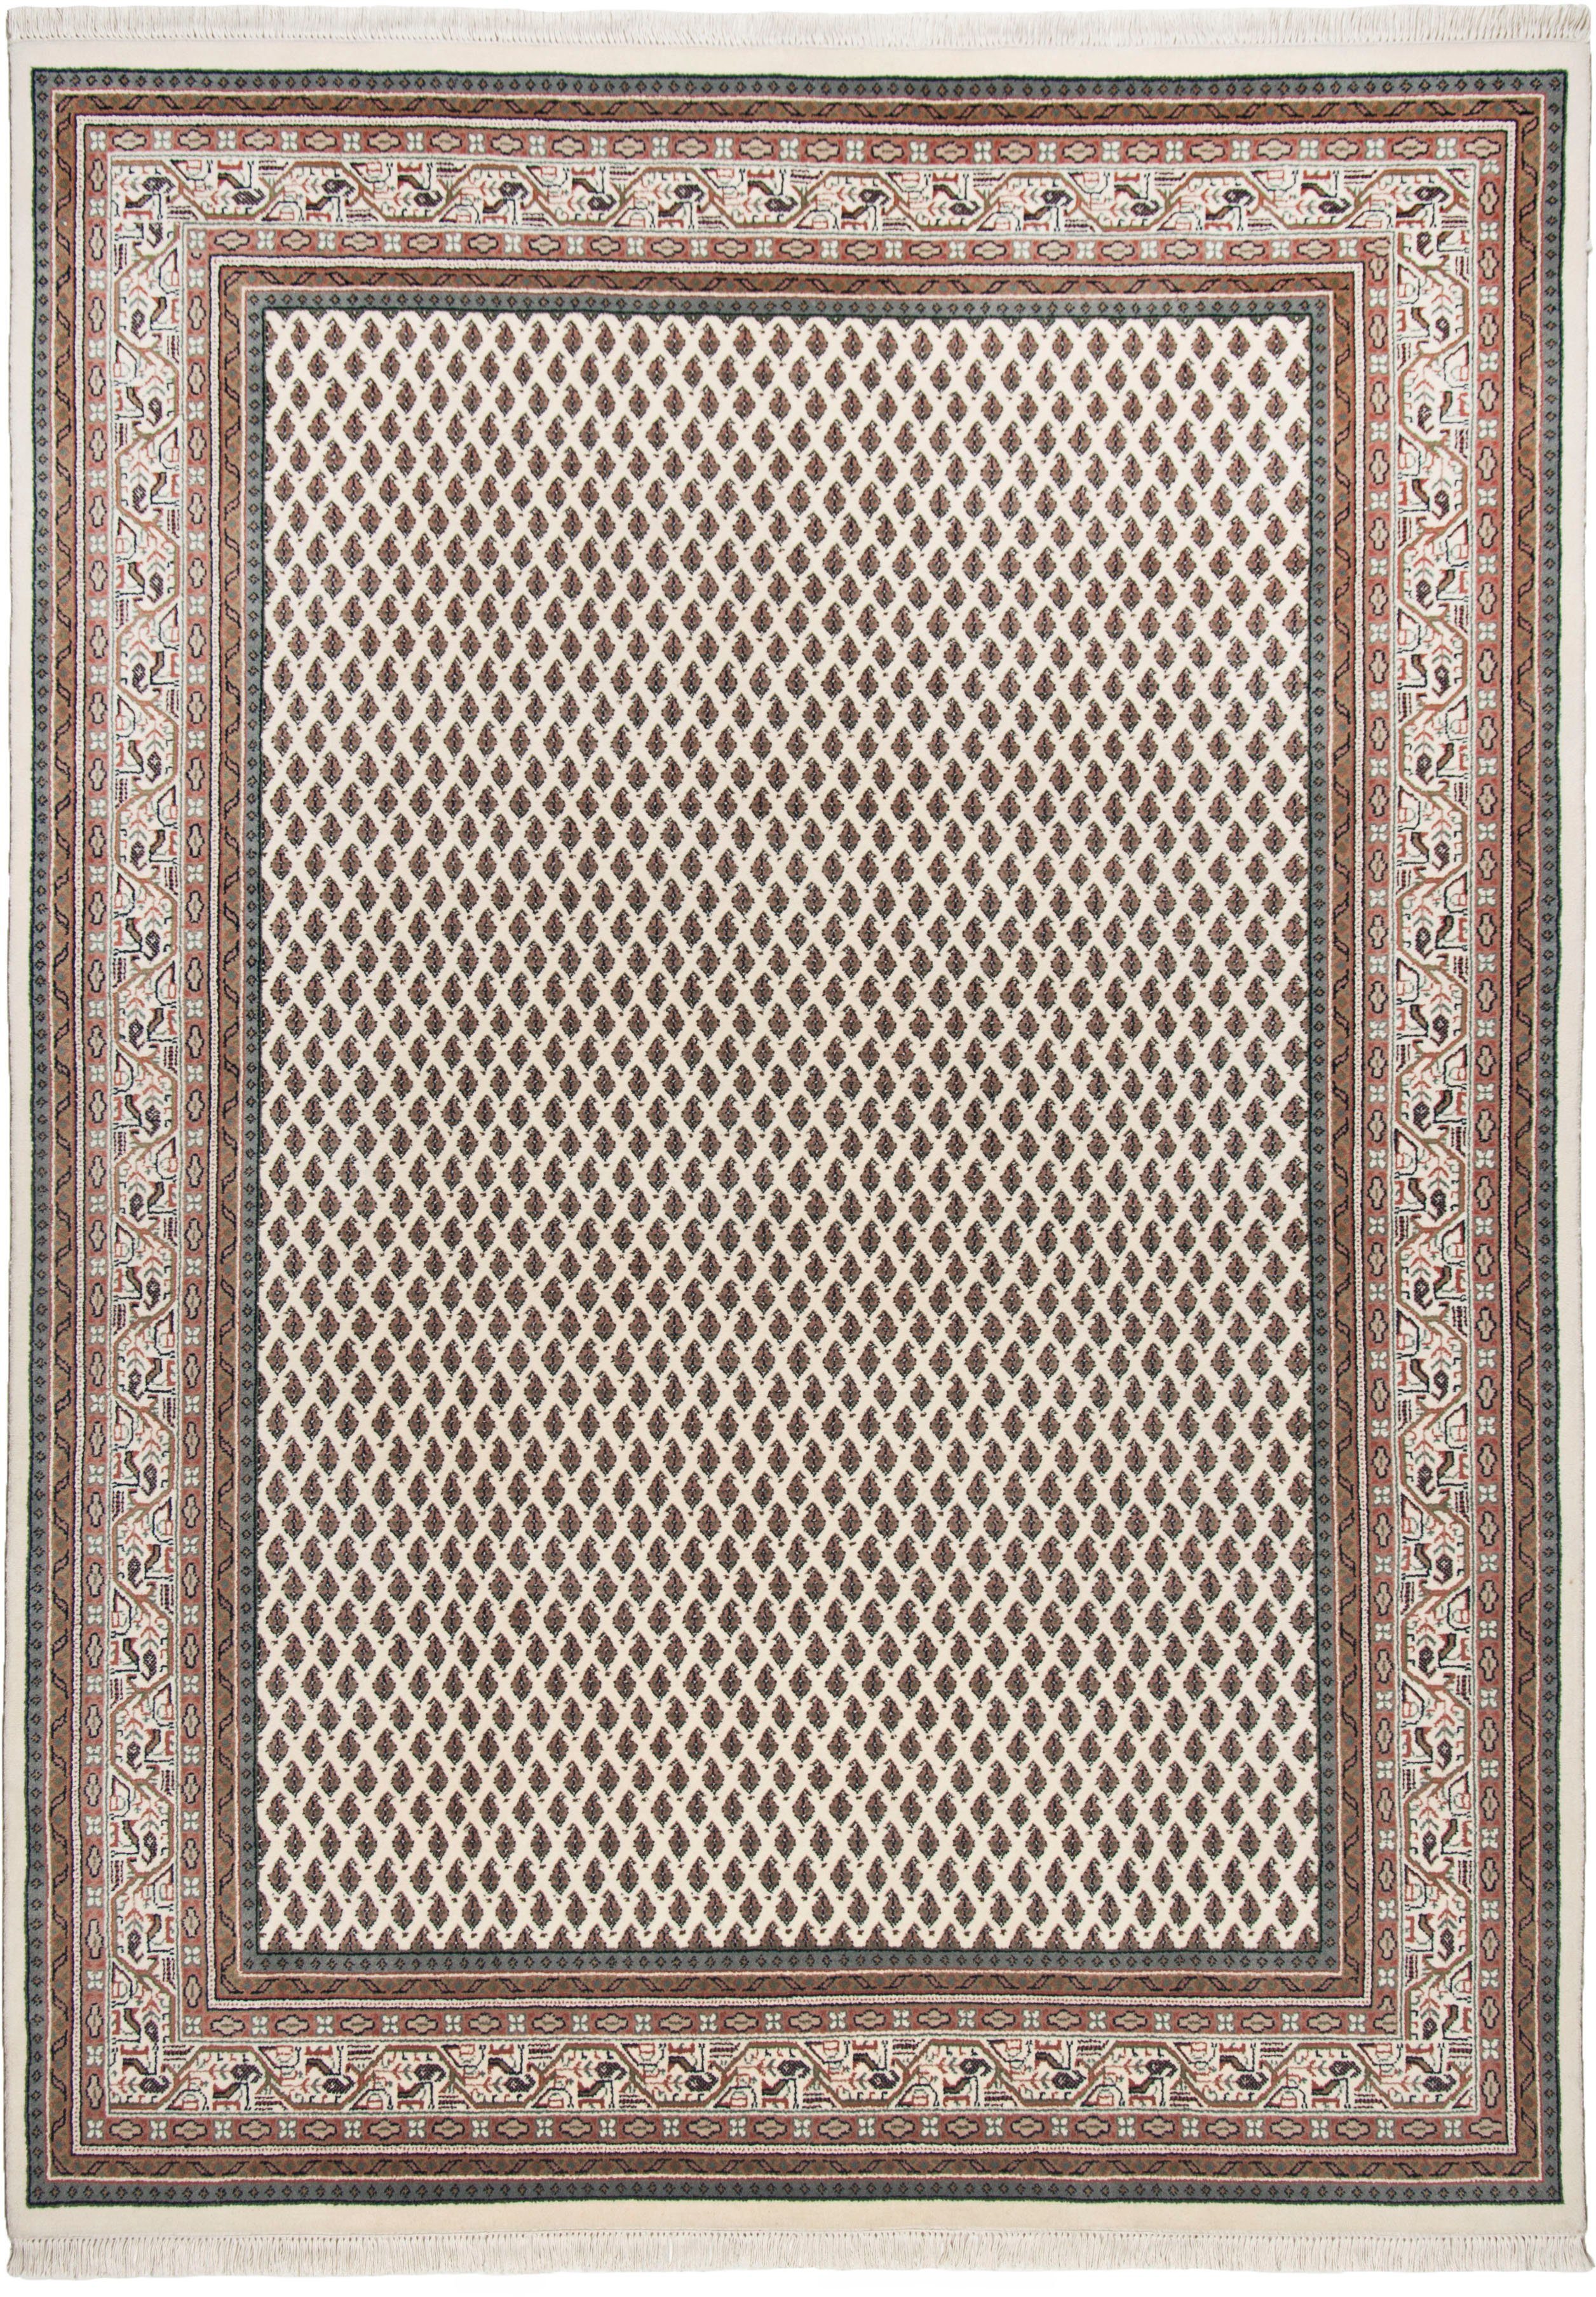 THEKO Oosters tapijt Abbas Meraj Mir zuivere wol, met de hand geknoopt, met franje, woonkamer